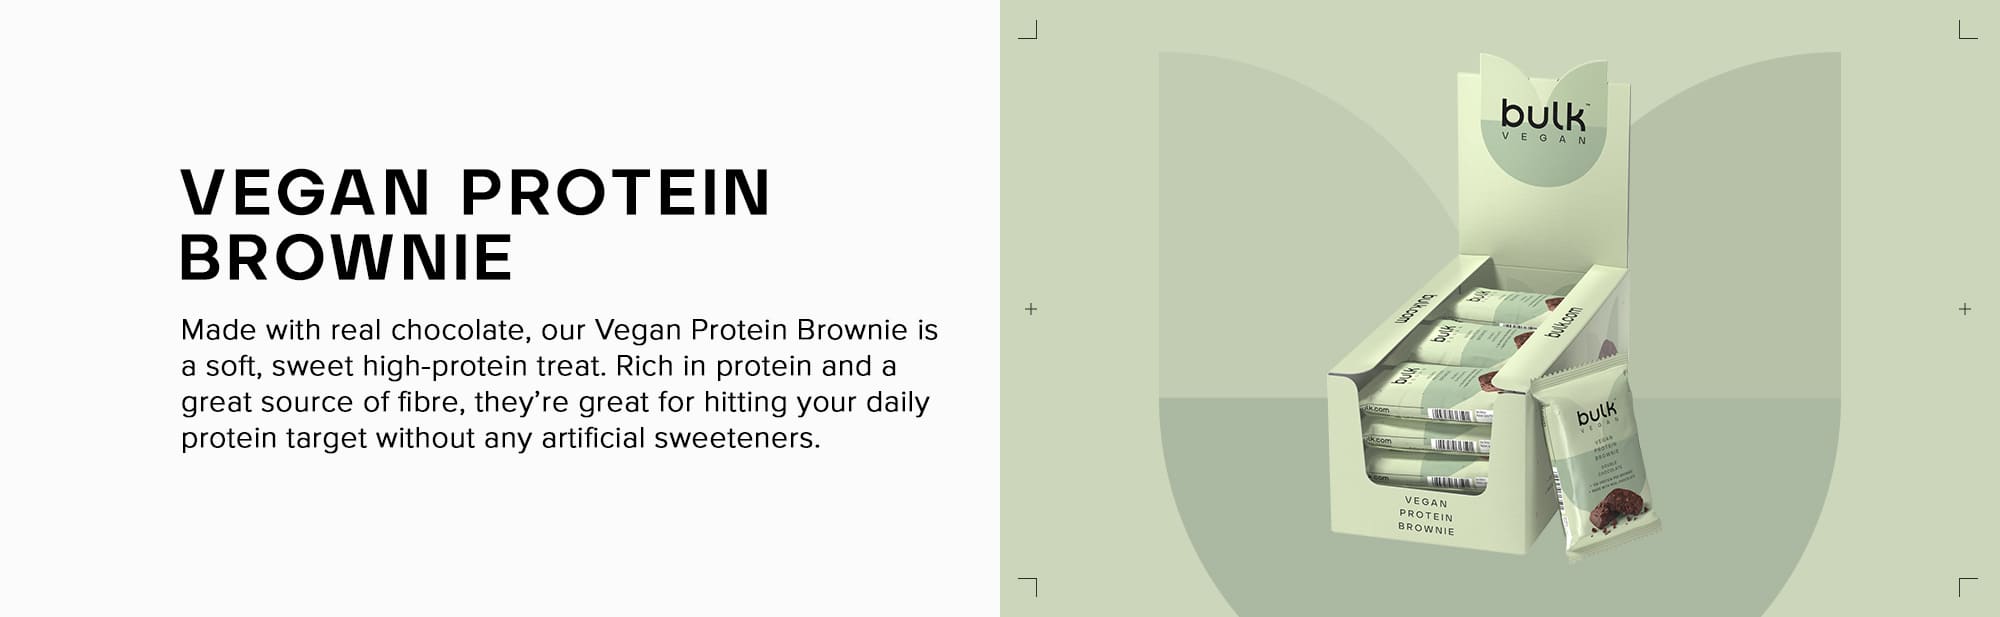 Bulk Vegan Protein Brownie, Chocolate, Pack of 12